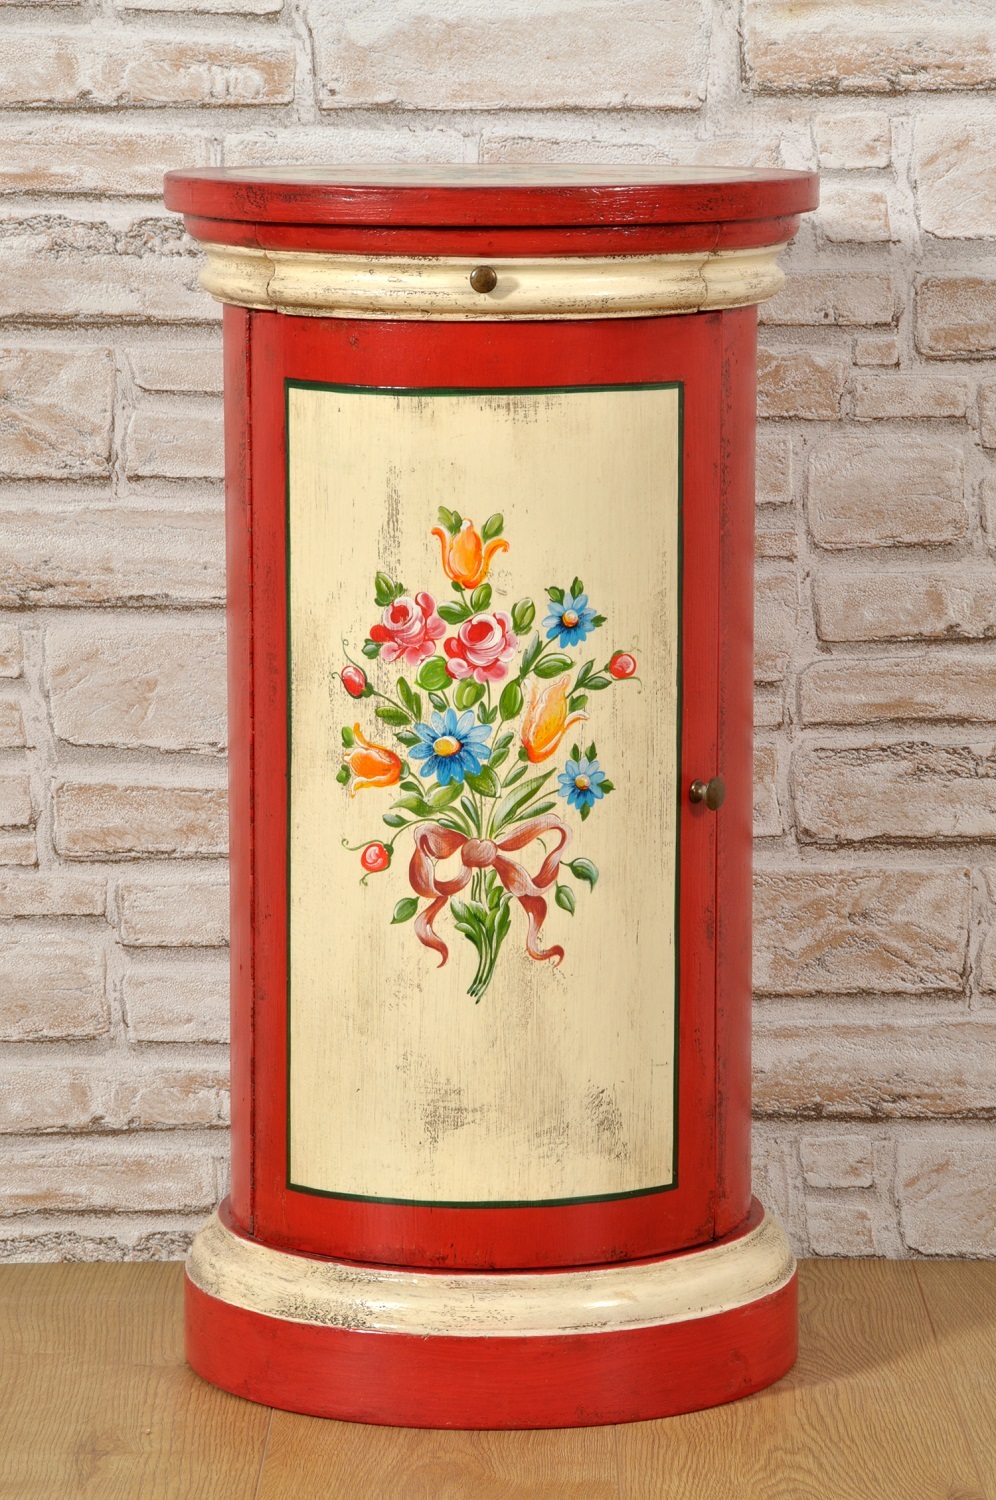 nel laboratorio di alta ebanisteria Vangelista è stata realizzata la colonna a cilindro rotonda decorata a mano in stile classico tirolese dipinti floreali e colori del bianco e rosso